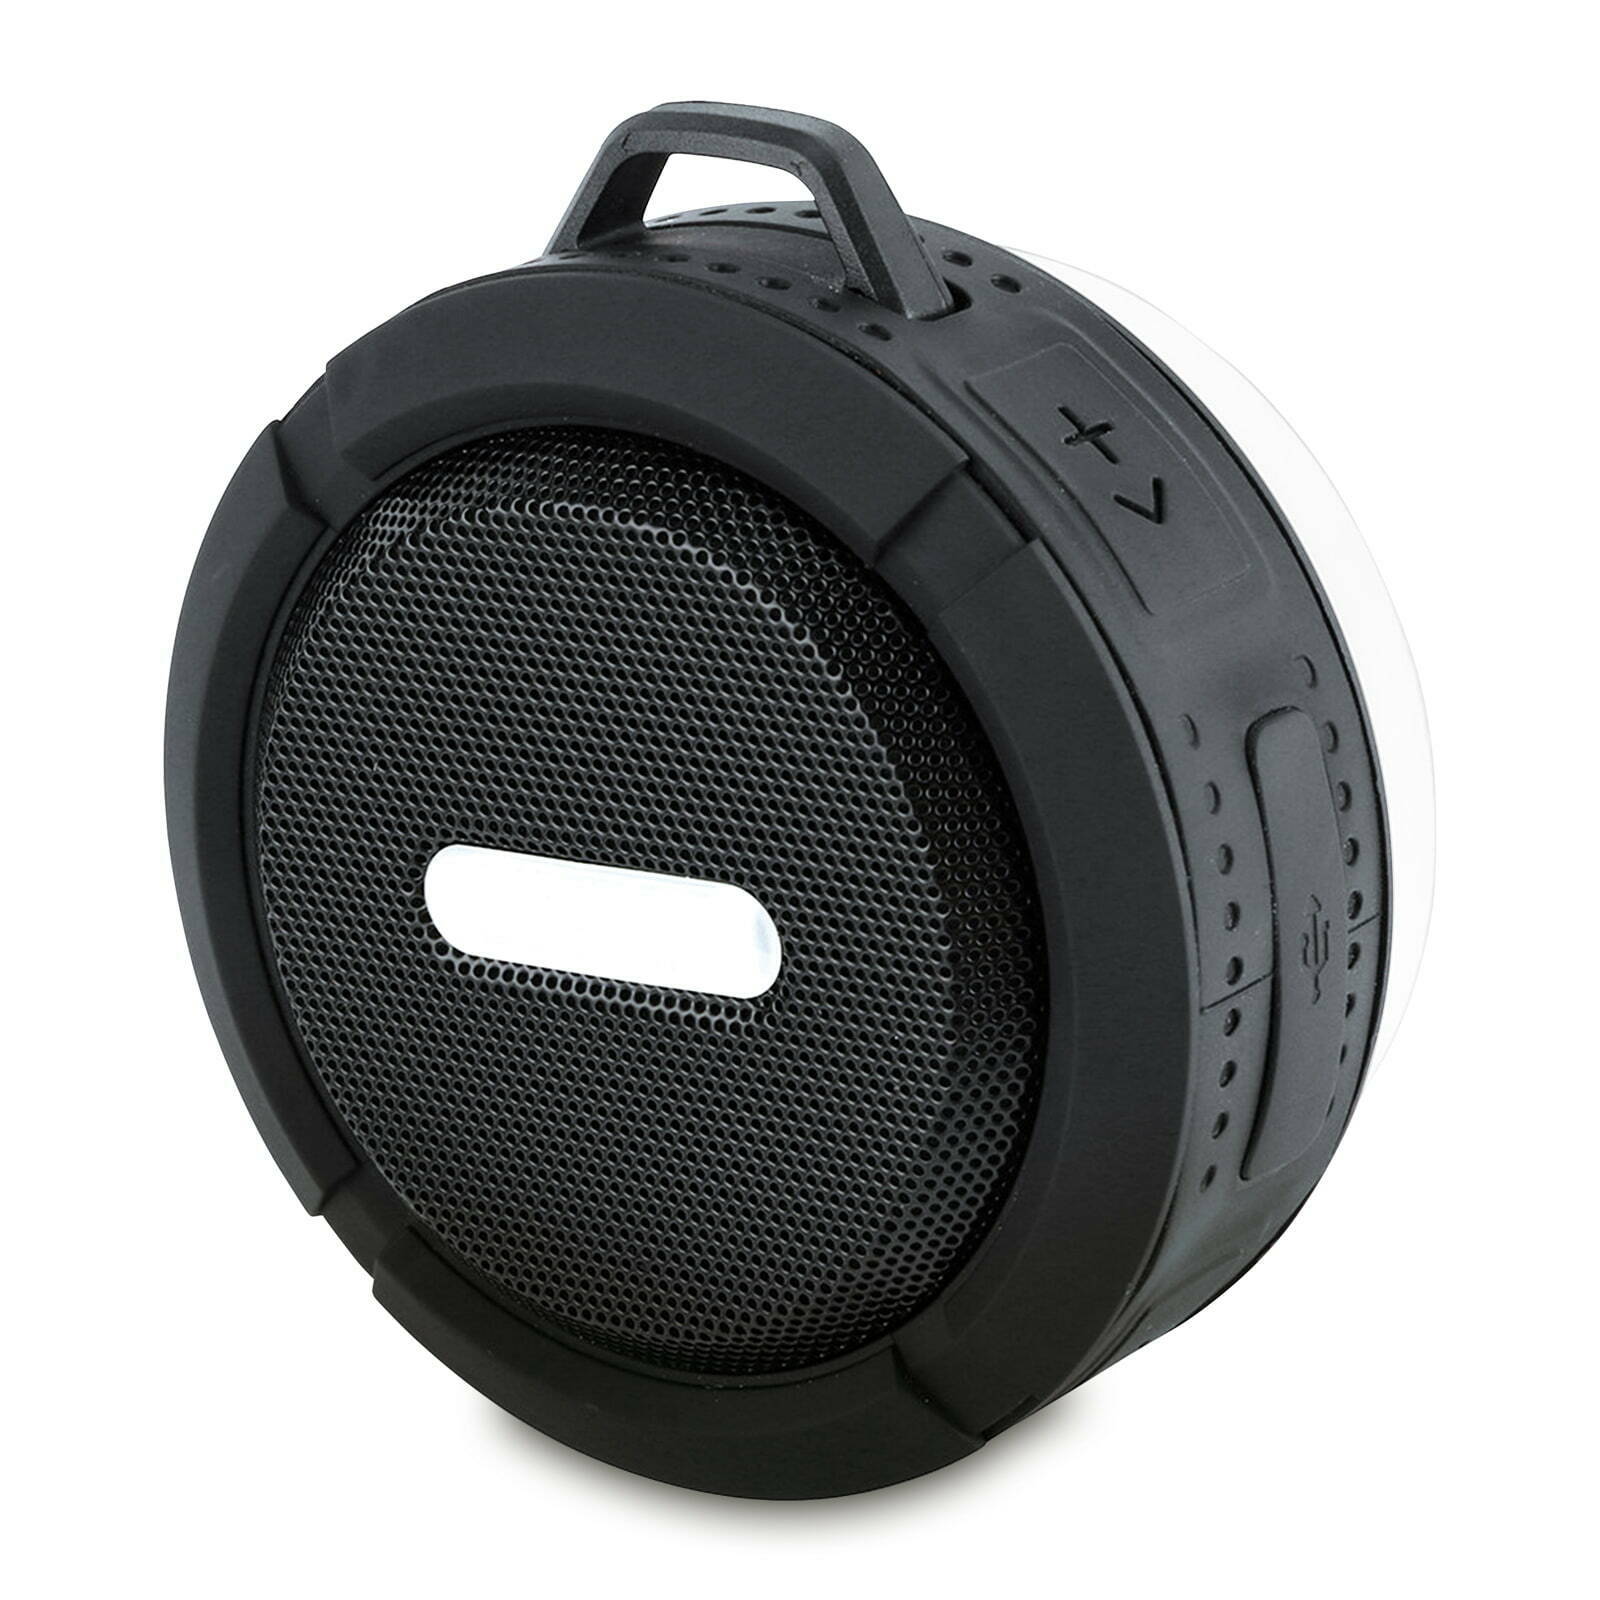 Bild zu EAXUS Wasserdichter Bluetooth Lautsprecher für 9,99€ (Vergleich: 12,99€)